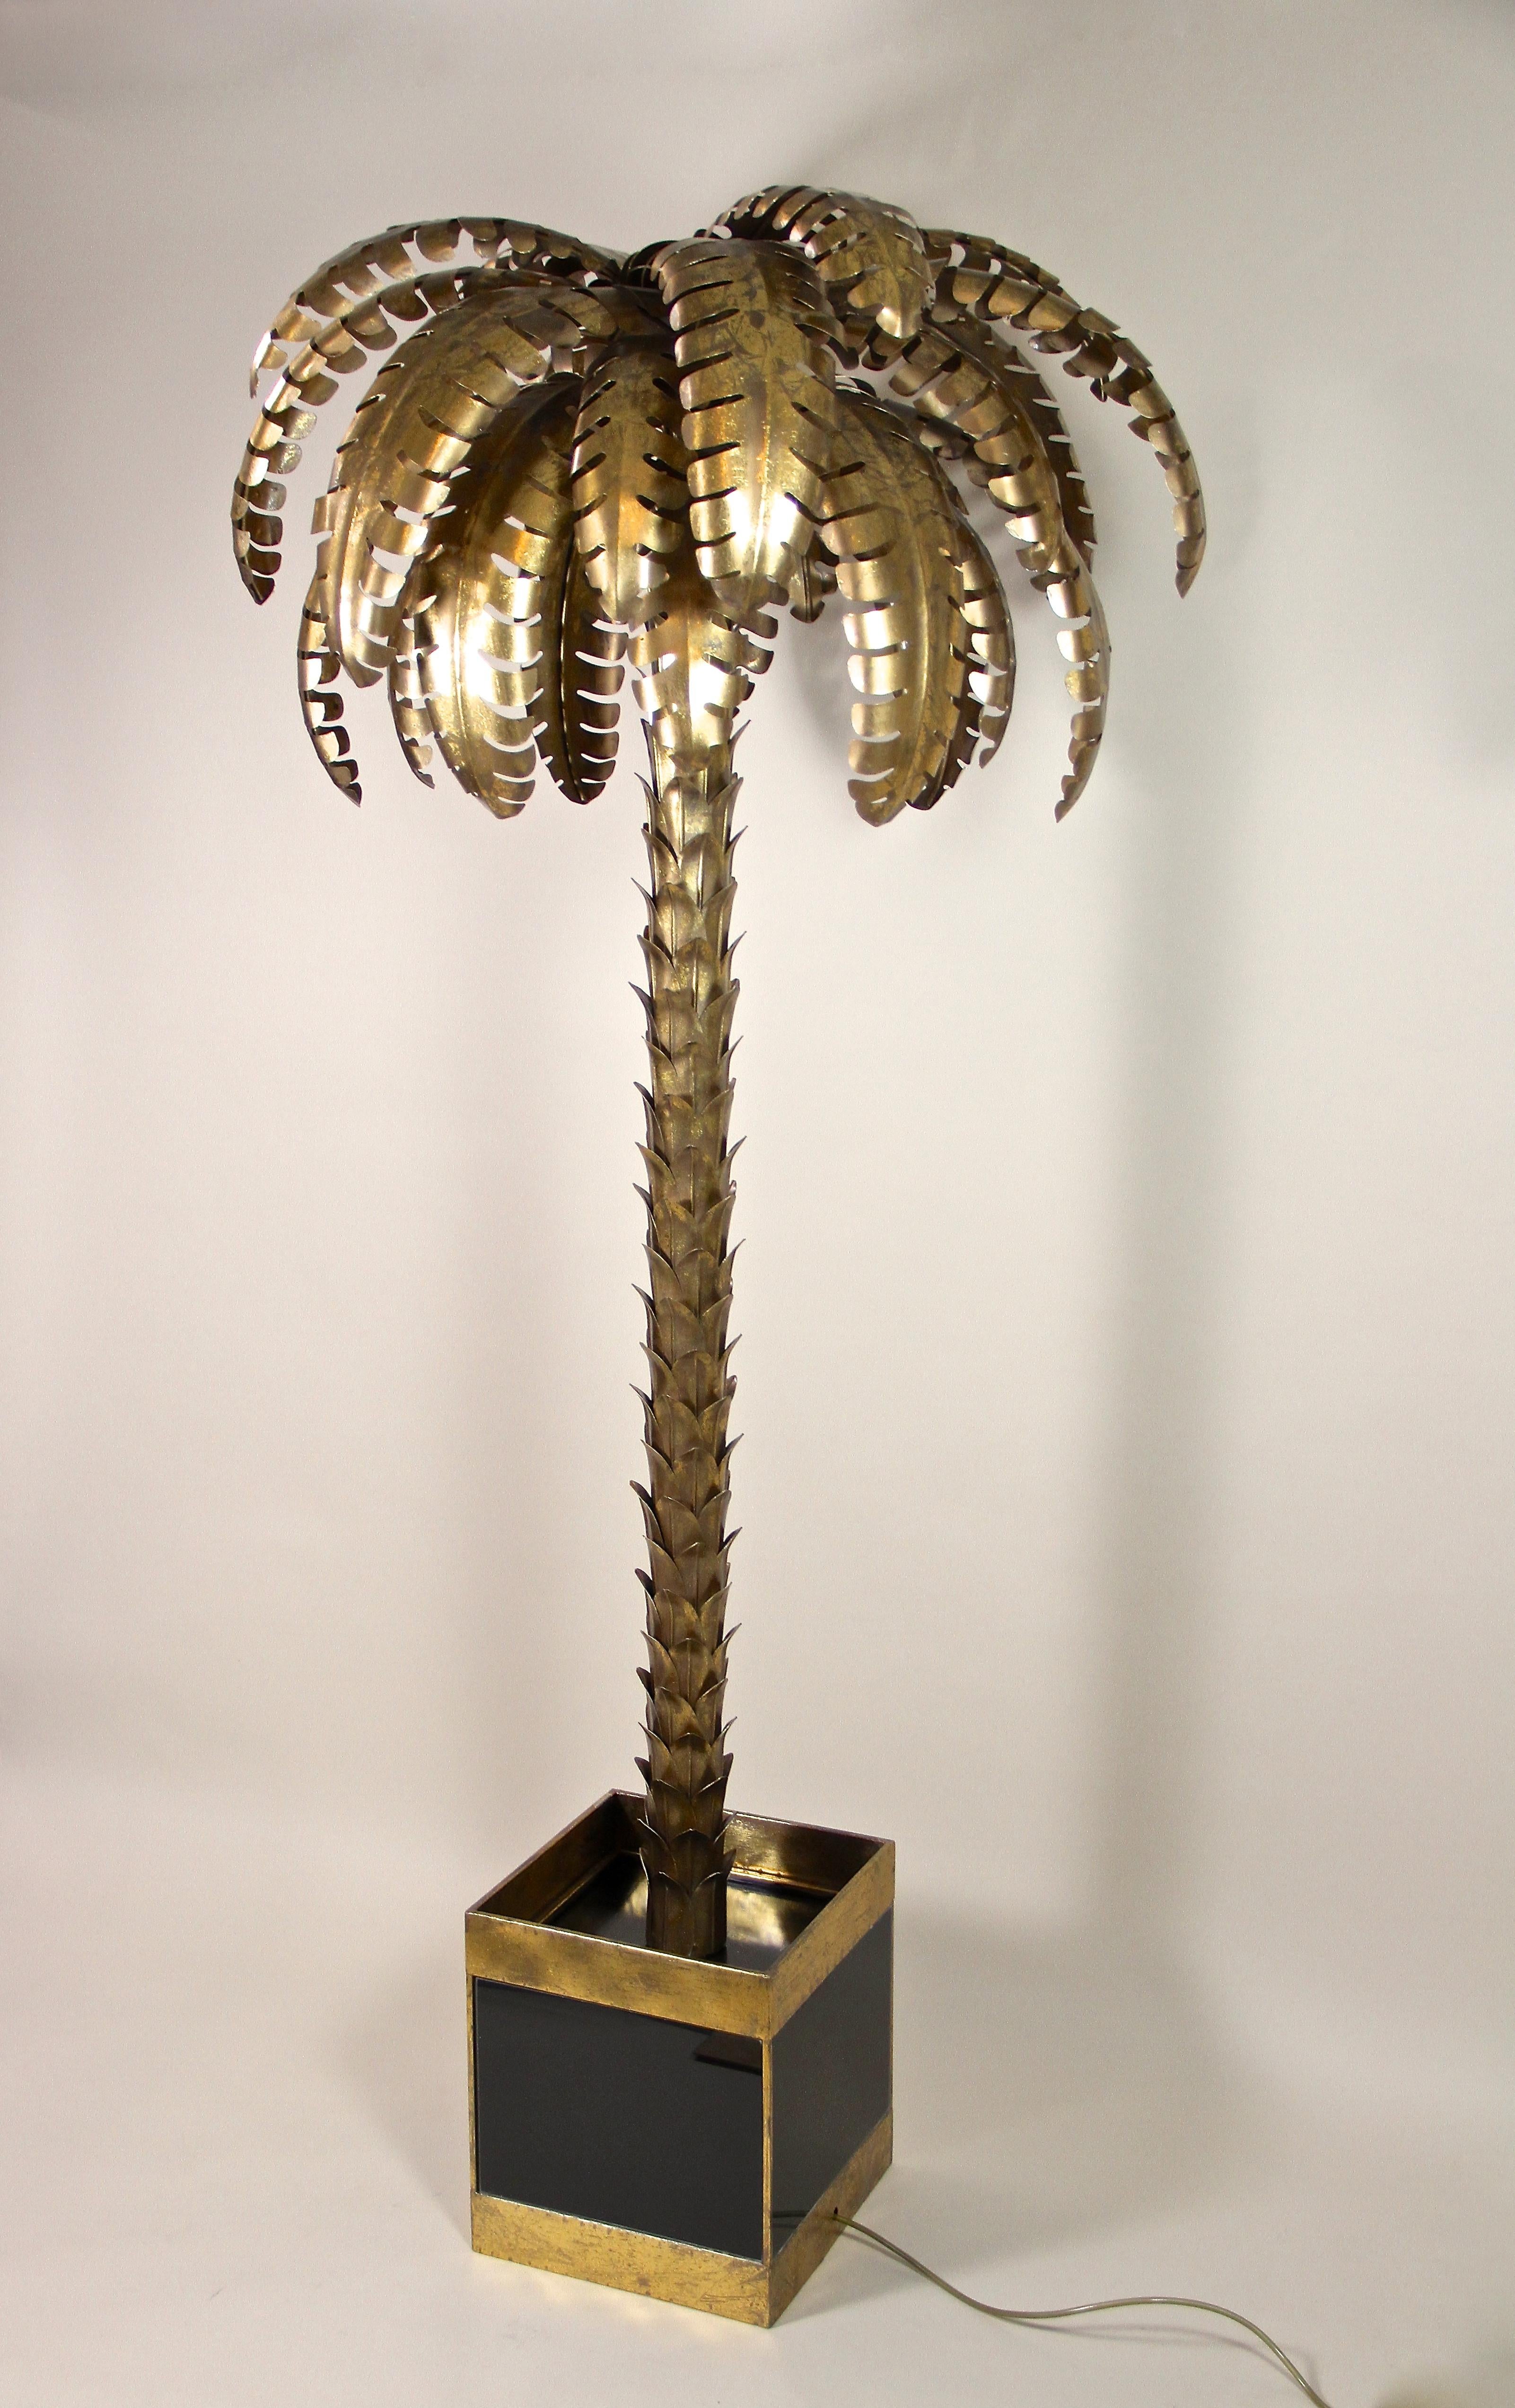 Remarquable lampadaire en forme de palmier de France attribué à la Maison Jansen. Élaboré en laiton dans les années 1970, ce lampadaire au design artistique est un véritable chef-d'œuvre. Ce lampadaire de style Hollywood Regency impressionne par sa